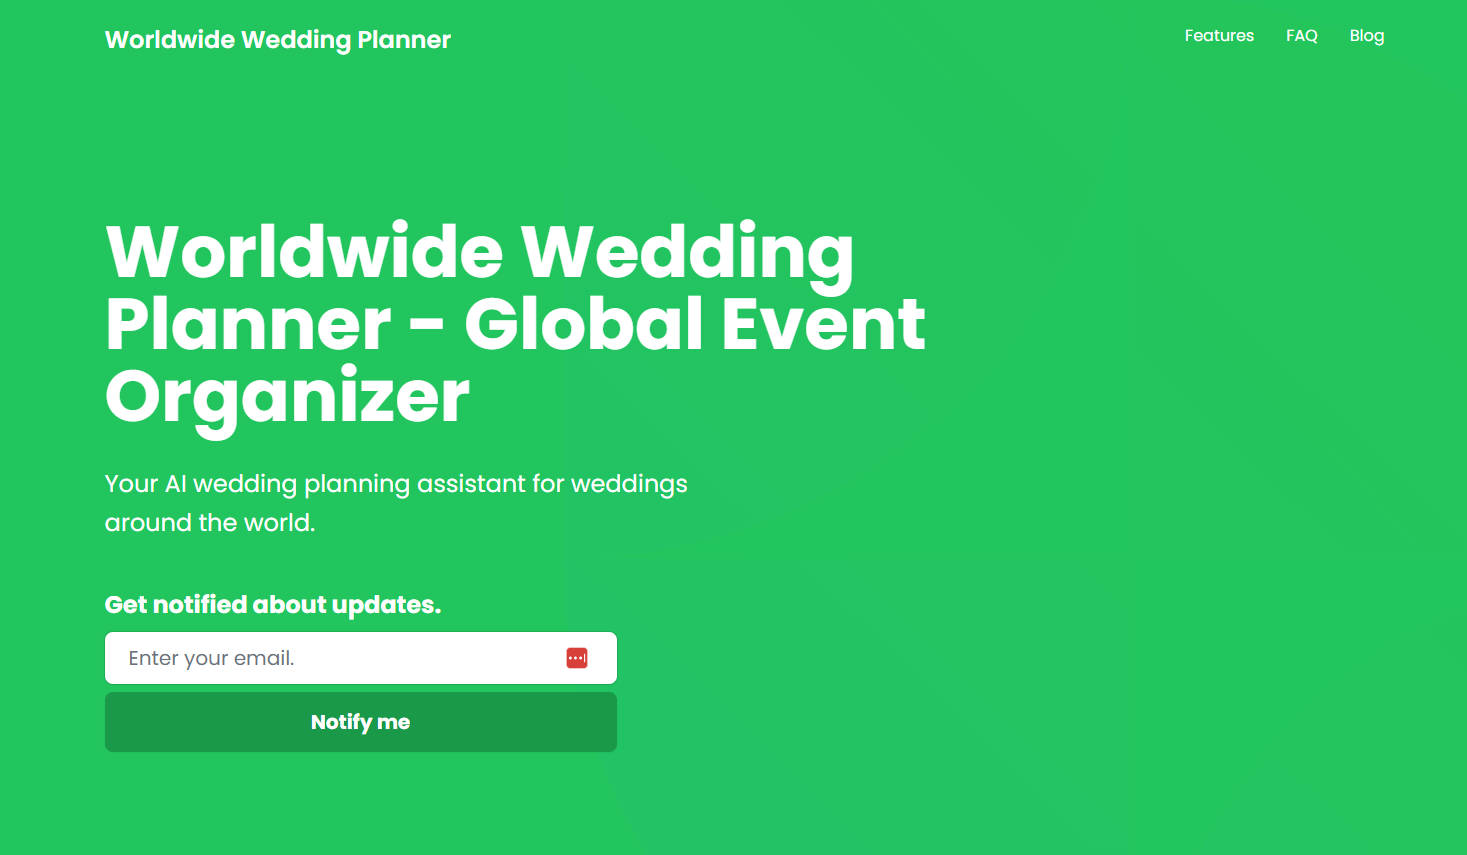 
Worldwide Wedding Planner
